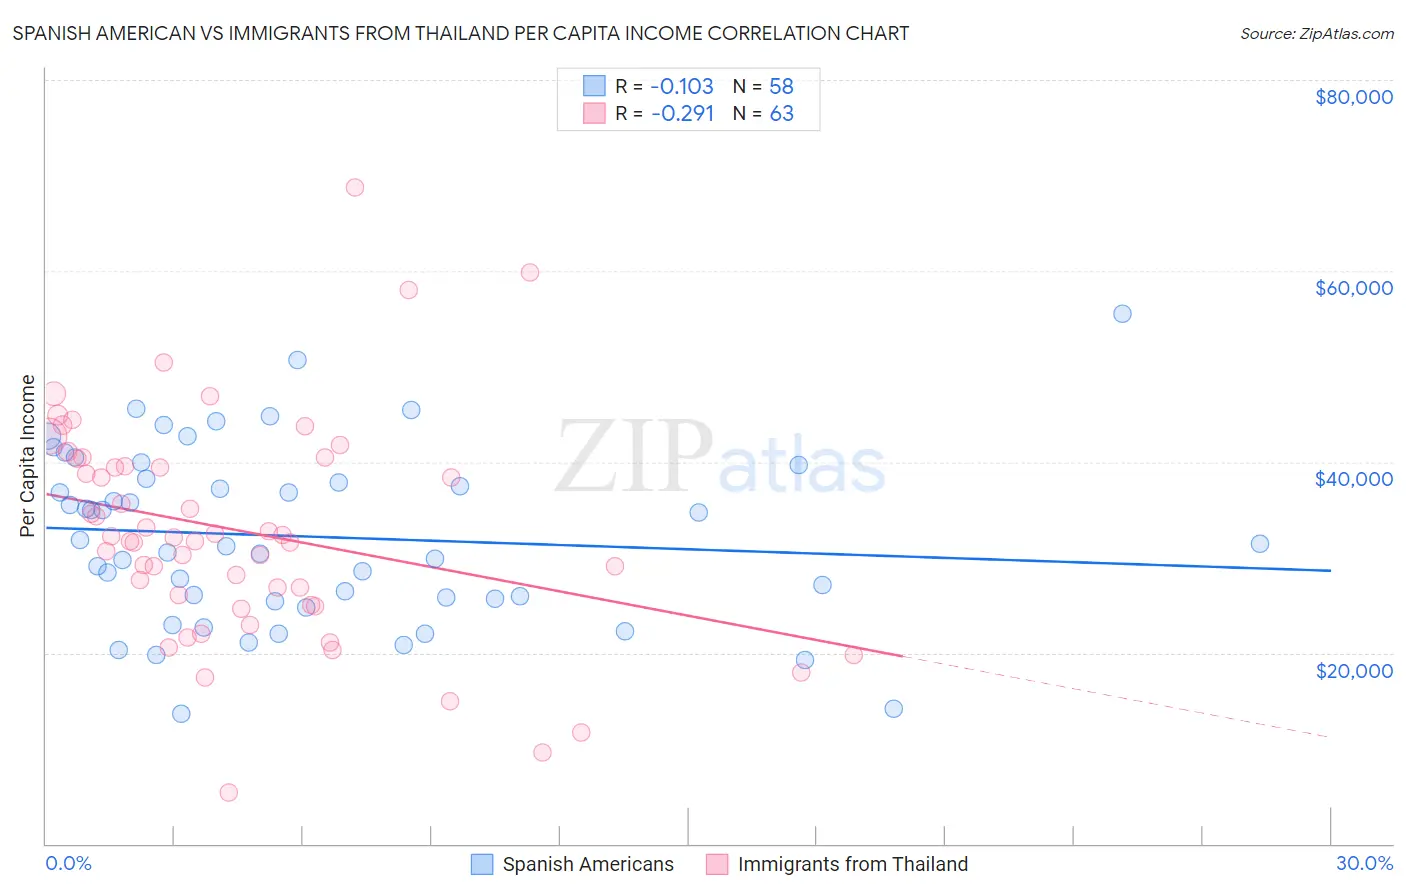 Spanish American vs Immigrants from Thailand Per Capita Income